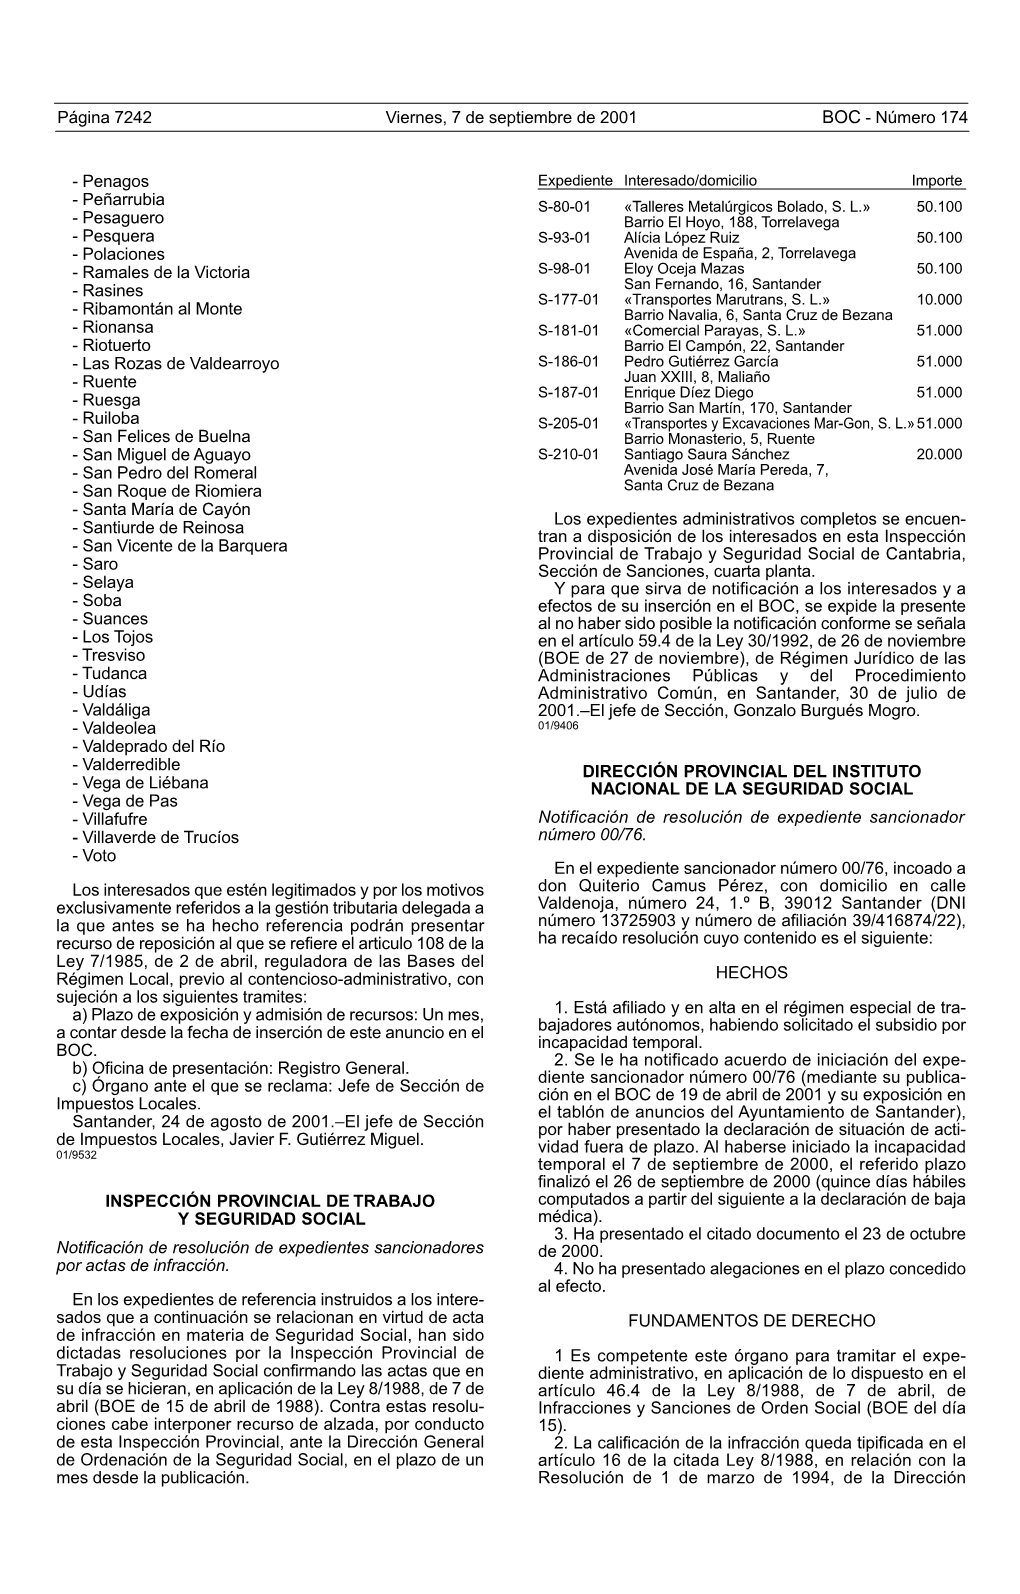 Penagos Expediente Interesado/Domicilio Importe - Peñarrubia S-80-01 Çtalleres Metalúrgicos Bolado, S